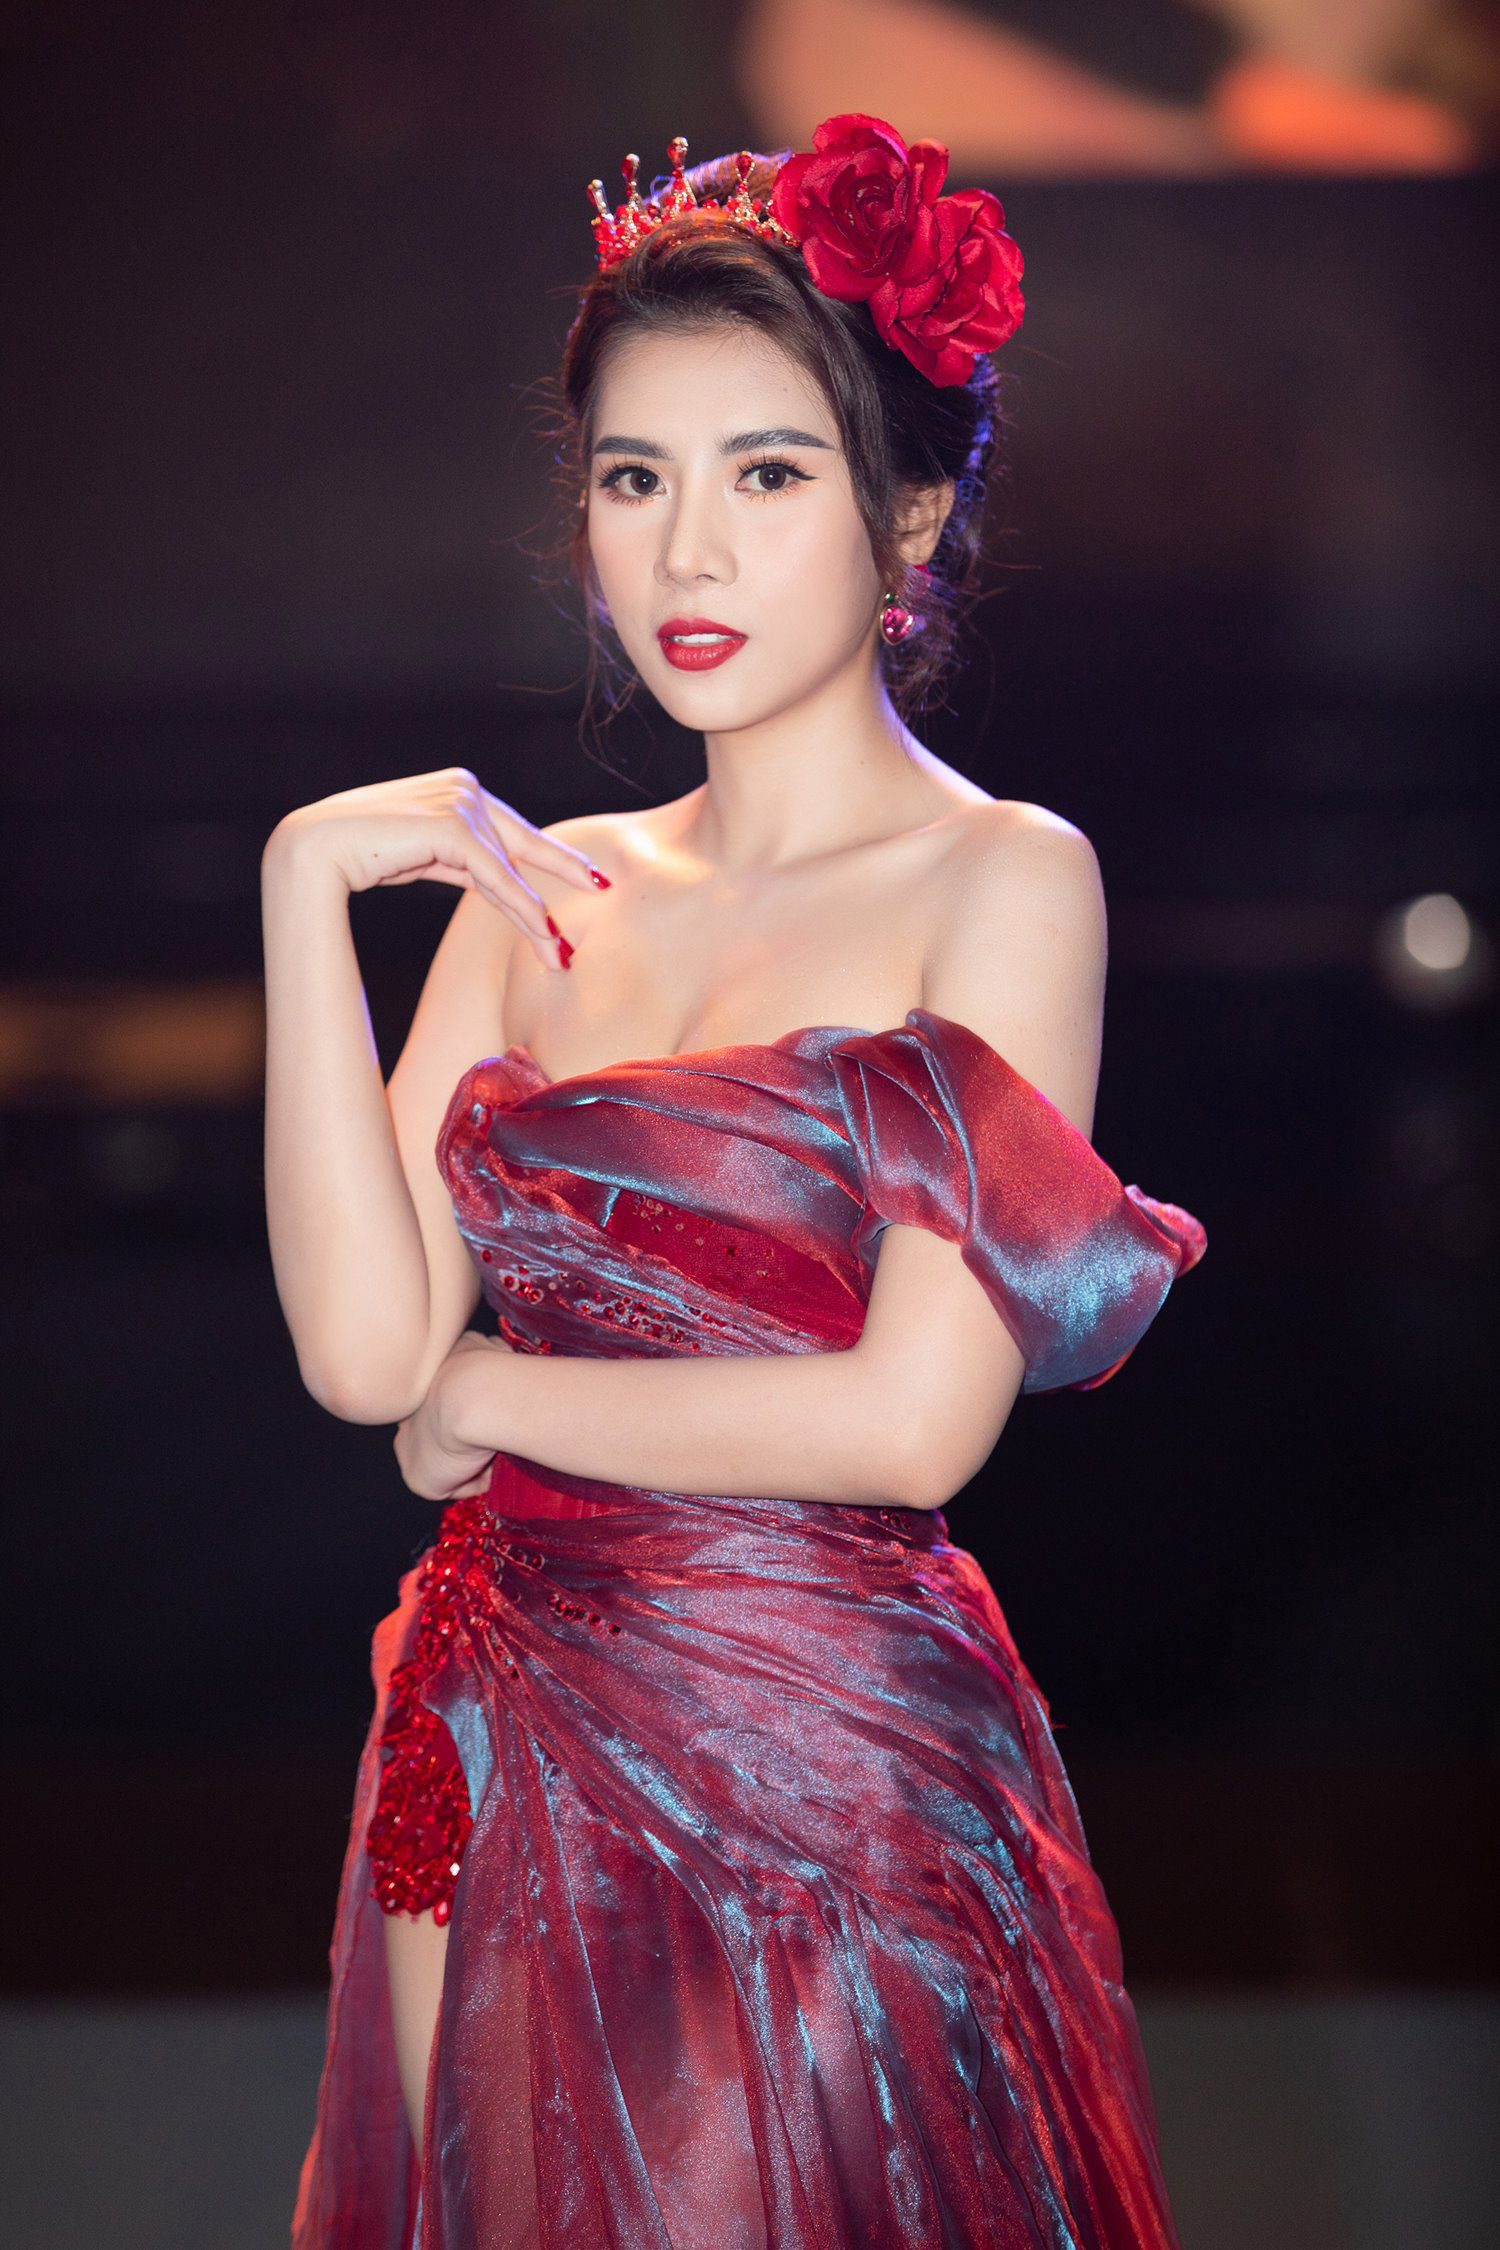 Hoa hậu 25 tuổi quê Khánh Hòa không cần đại gia vẫn có nhà Sài Gòn, xe hơi sang - 3